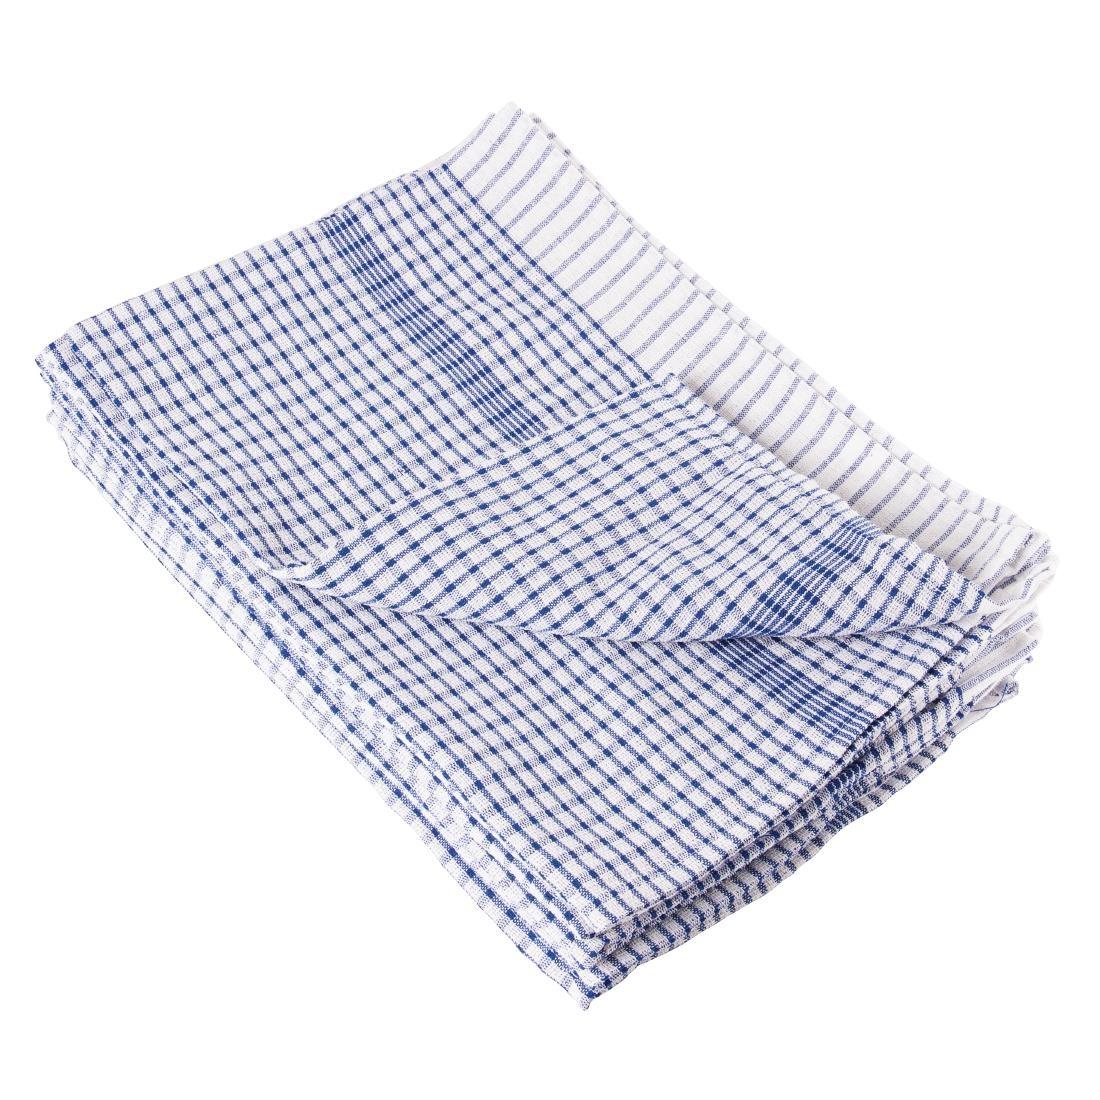 Vogue Wonderdry Blue Tea Towels (Pack of 10) - CC596  - 1